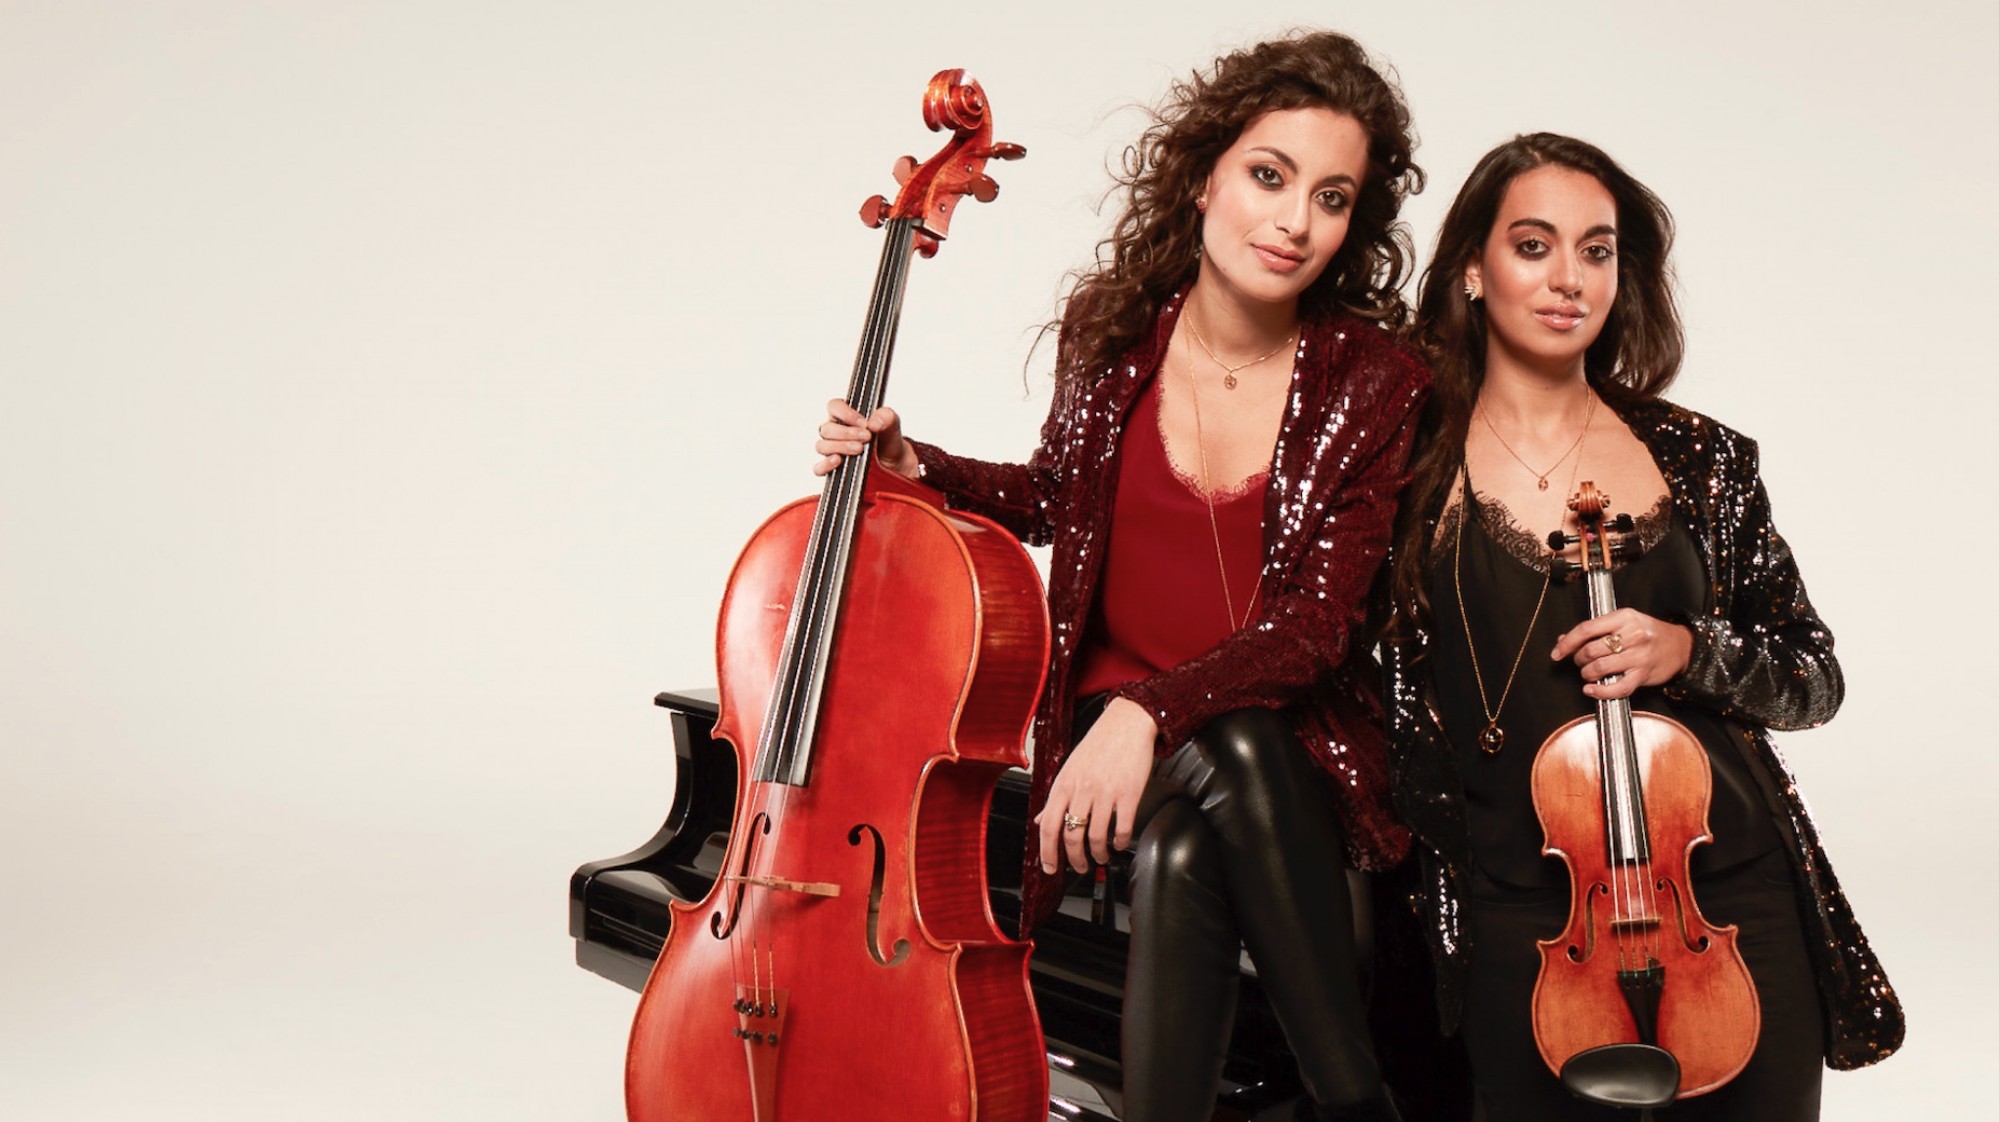 مقابلة مع Ayoub Sisters الموسيقى الكلاسيكية بروح شبابية معاصرة